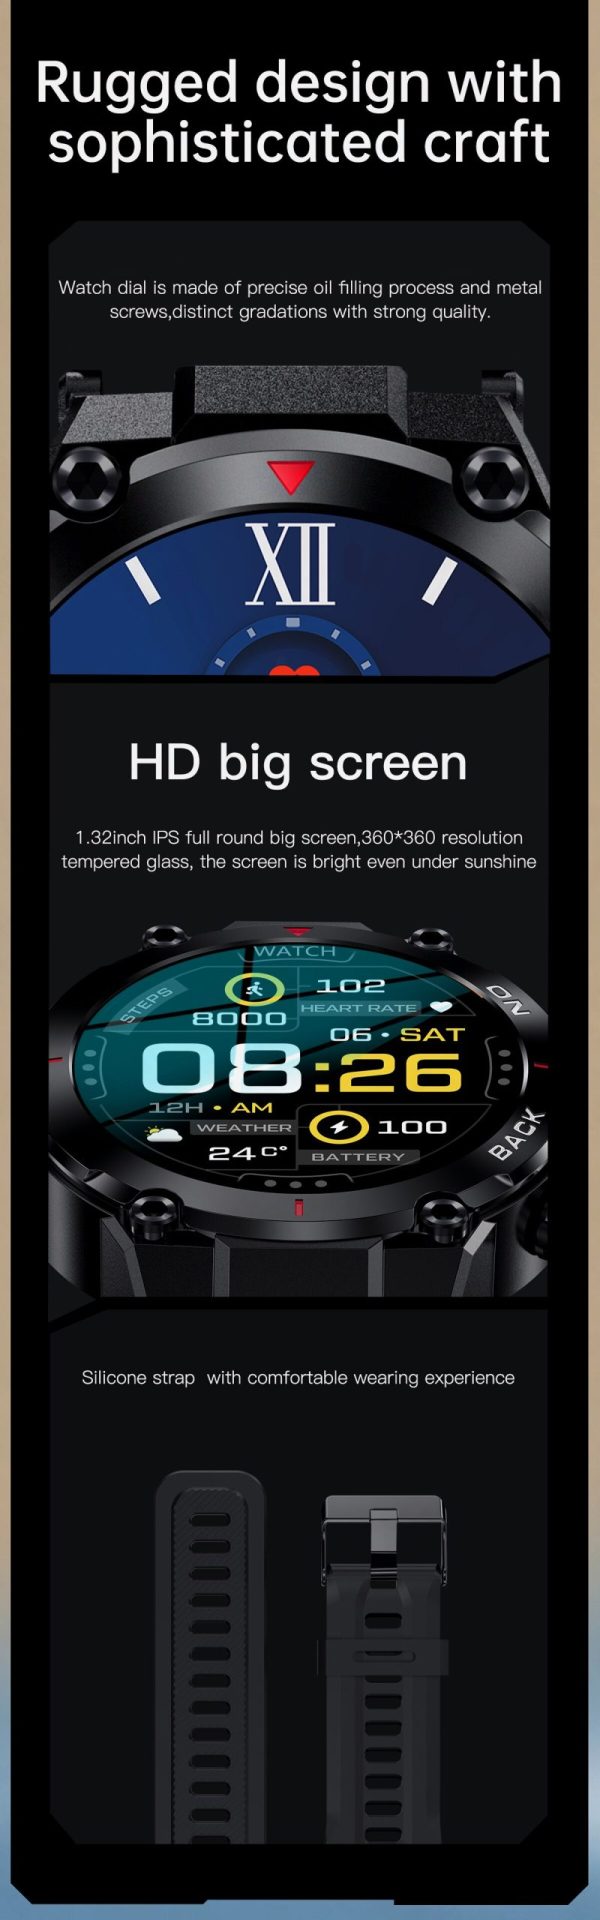 13938-sb32rn-scaled Xiaomi-reloj inteligente Ip68 para hombre, accesorio de pulsera deportivo resistente al agua con Gps, pantalla redonda de 2023 pulgadas, batería de 1,32 Mah, compatible con Android, novedad de 480